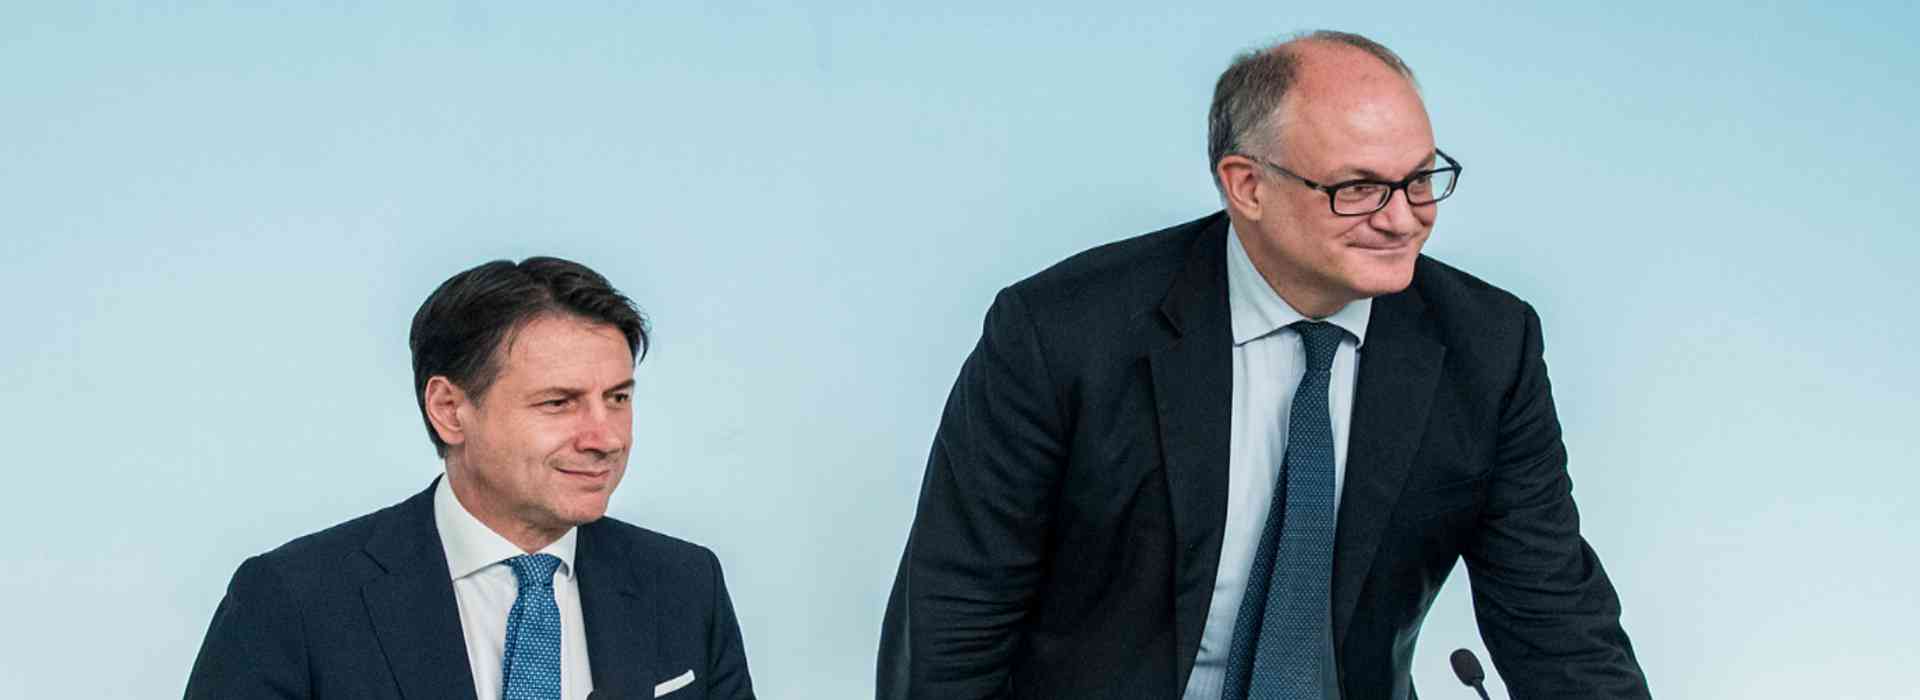 La Bce contro il governo italiano: "il cashback incide negativamente"